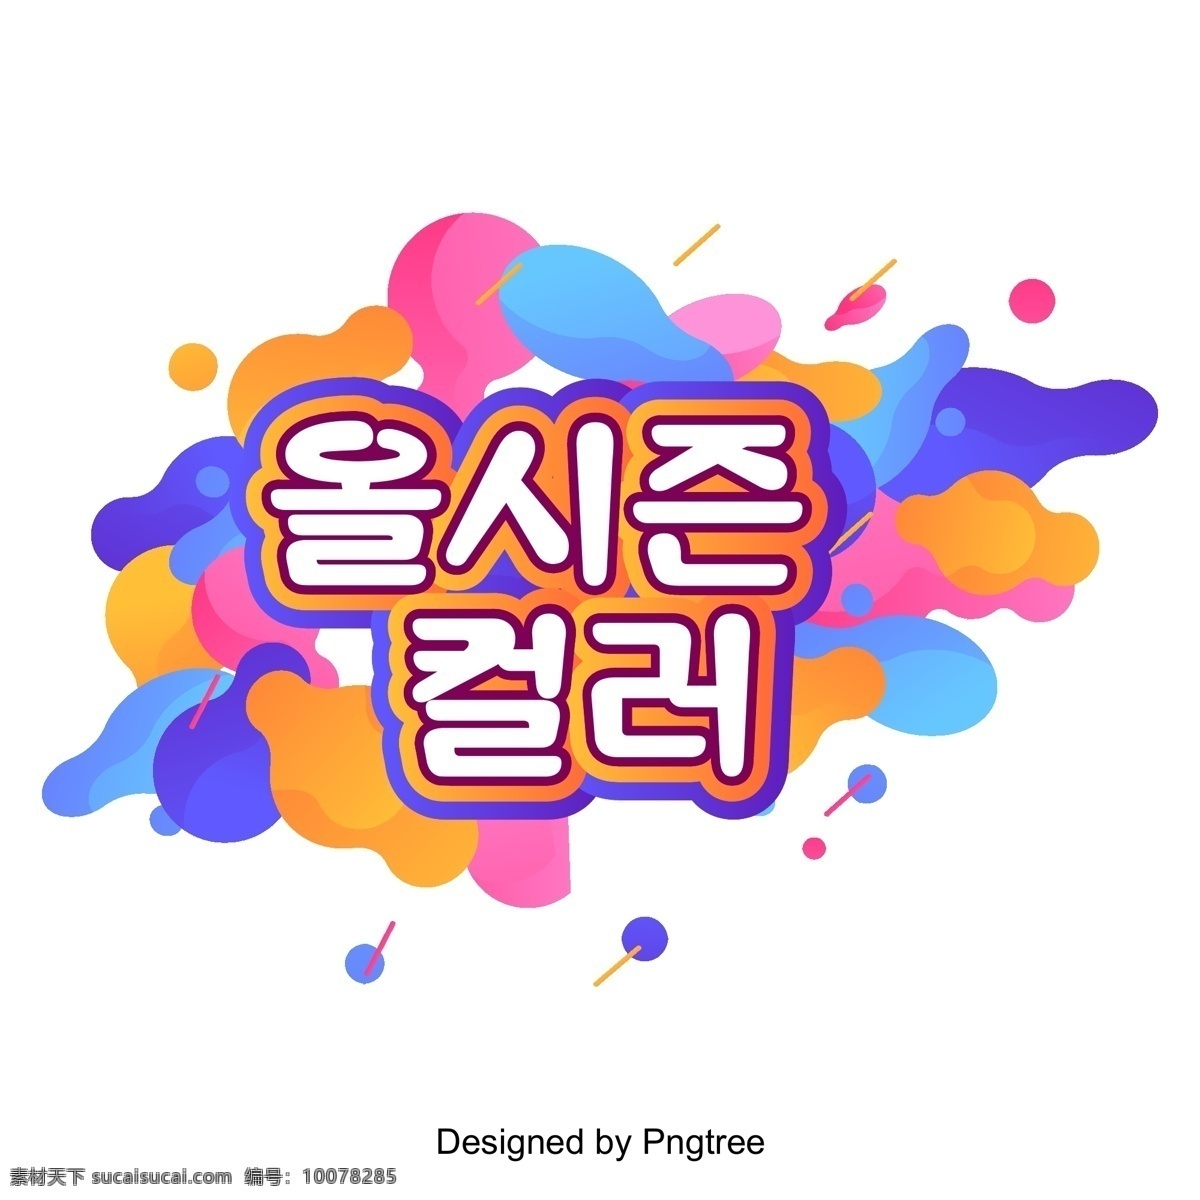 毒 流体 特 点将 逐渐 朝鲜 场景 季节性的 一个故事 颜色液体 时髦的 进步的 七个颜色 韩国 t的颜色